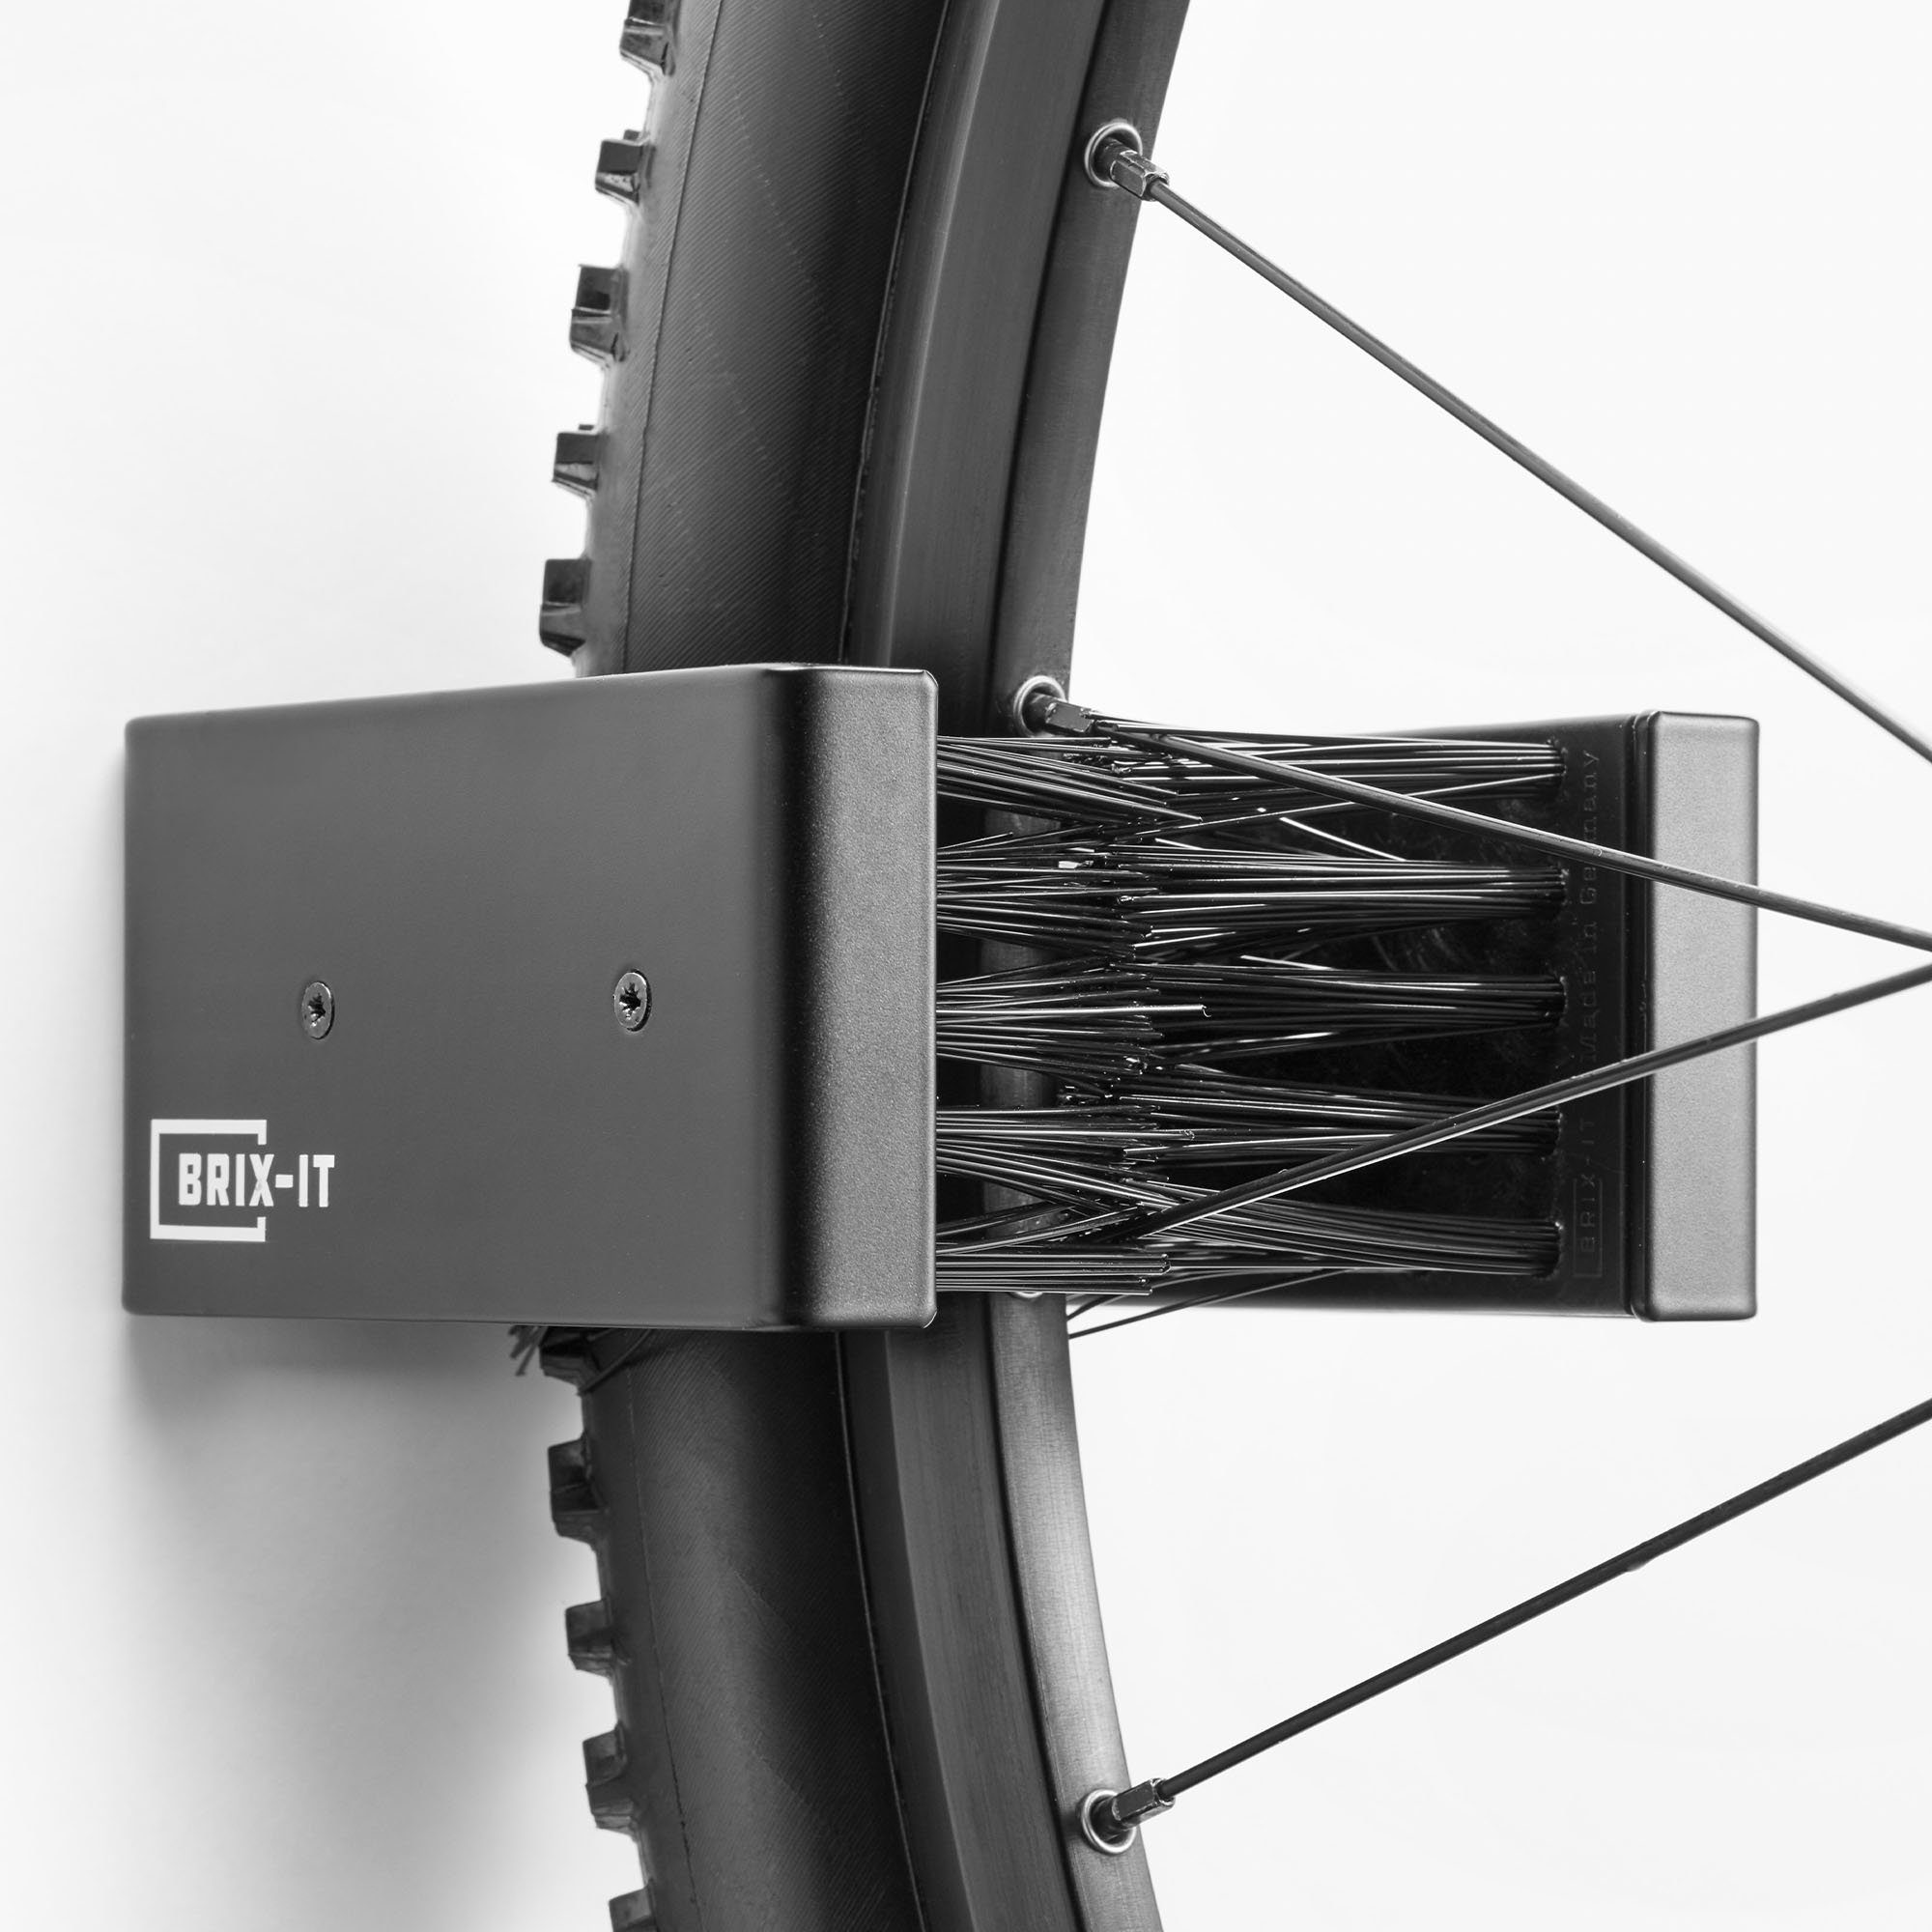 BRIX-IT Fahrradwandhalterung BRIX-IT (mit Montagematerial und Anleitung), Wandhalterung für Fahrräder und E Bikes Fahrradwandhalterung universal schwarz | Fahrradwandhalterungen